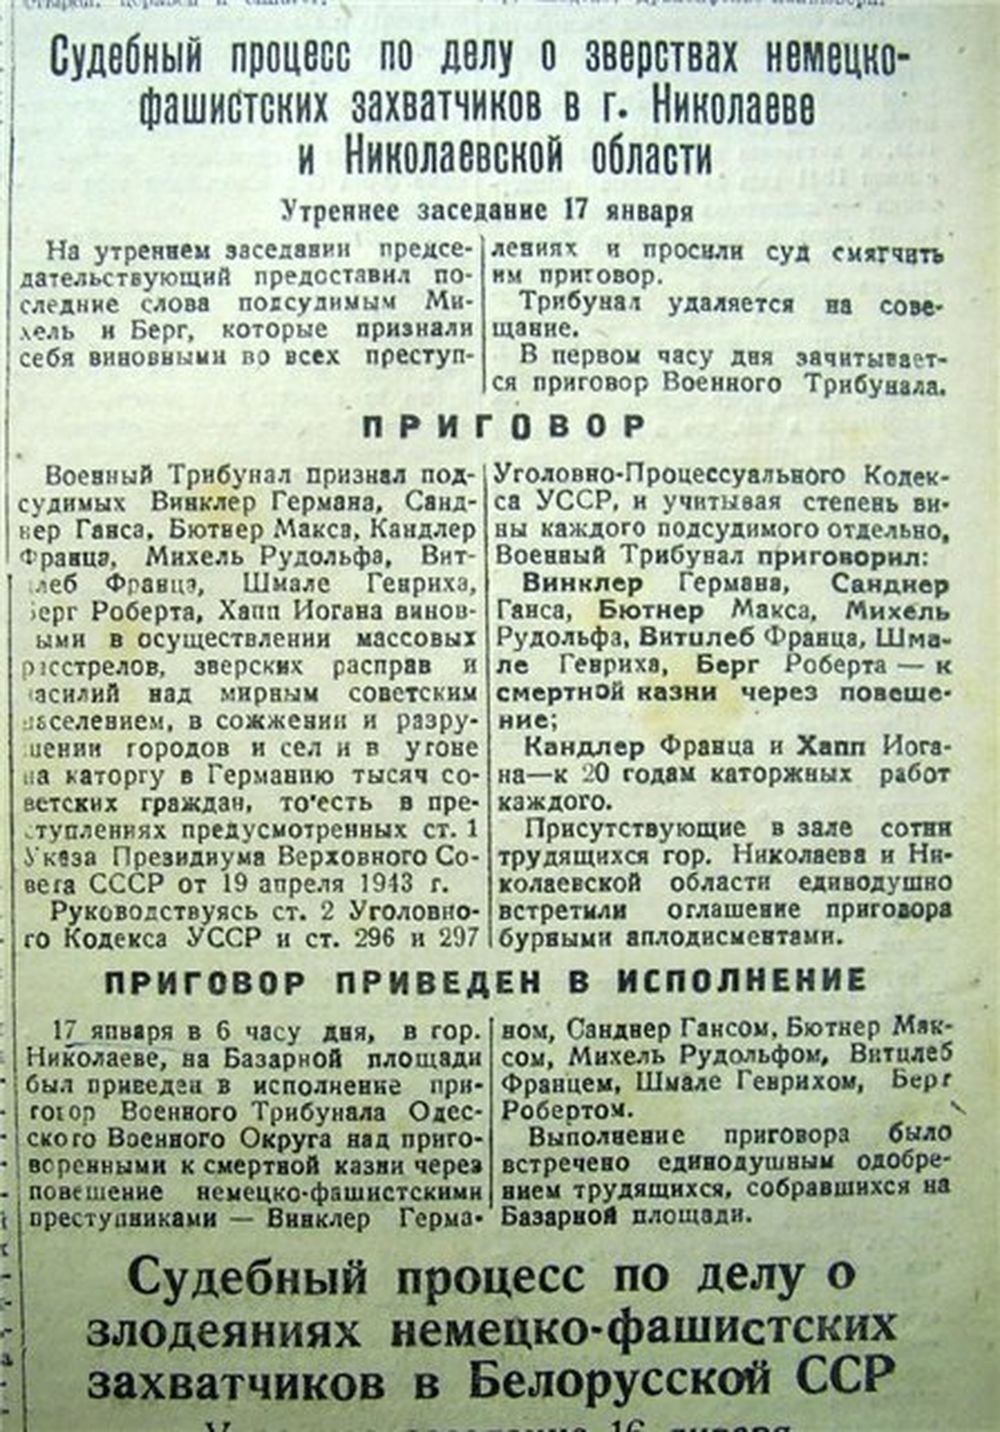 Указ 19 декабря. Указ Президиума Верховного совета СССР от 19 апреля 1943 г. Указ Президиума 19 апреля 1943. Указ 39 от 19 апреля 1943 года. Указ от 19 апреля 1943 года о мерах наказания для немецко-фашистских.